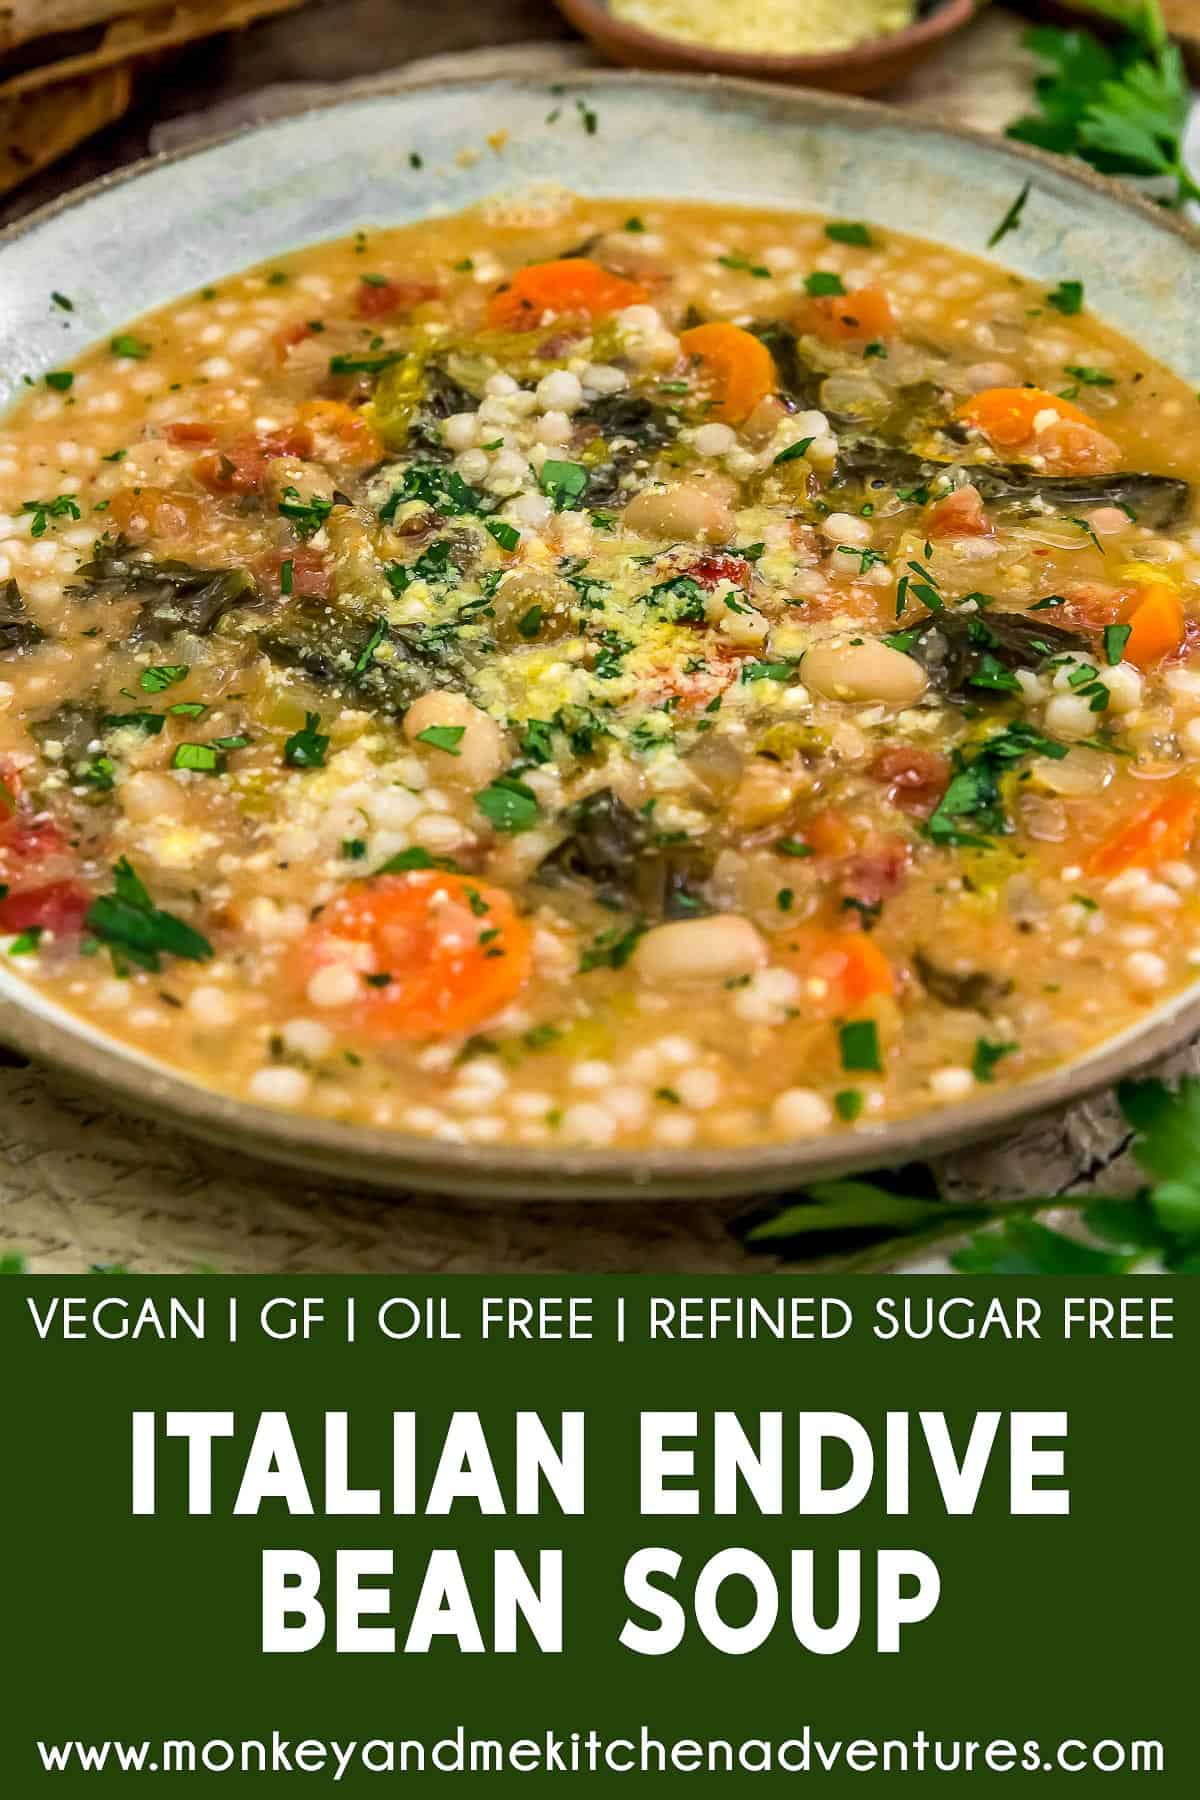 Italian Endive Bean Soup with text description